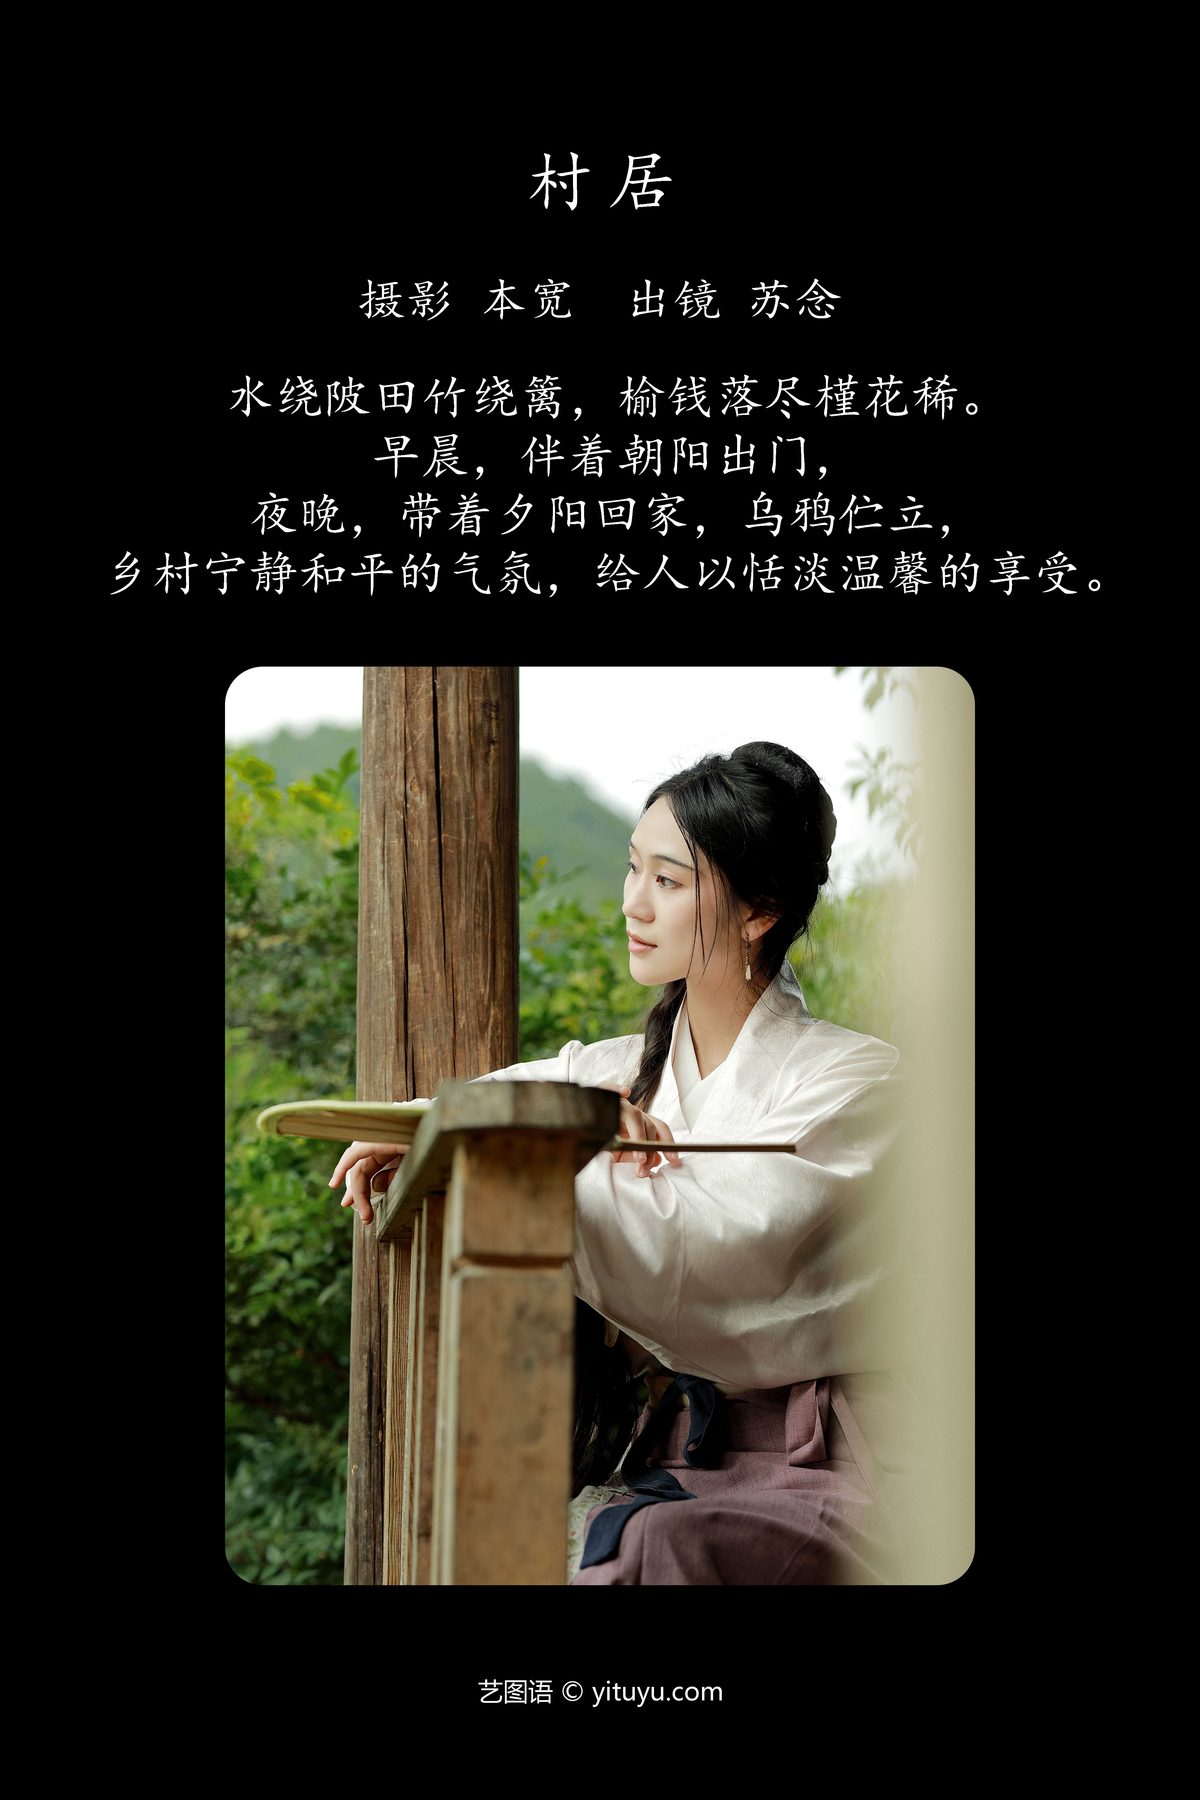 YiTuYu艺图语 Vol 4902 Chang Nian W 0001 5640754760.jpg